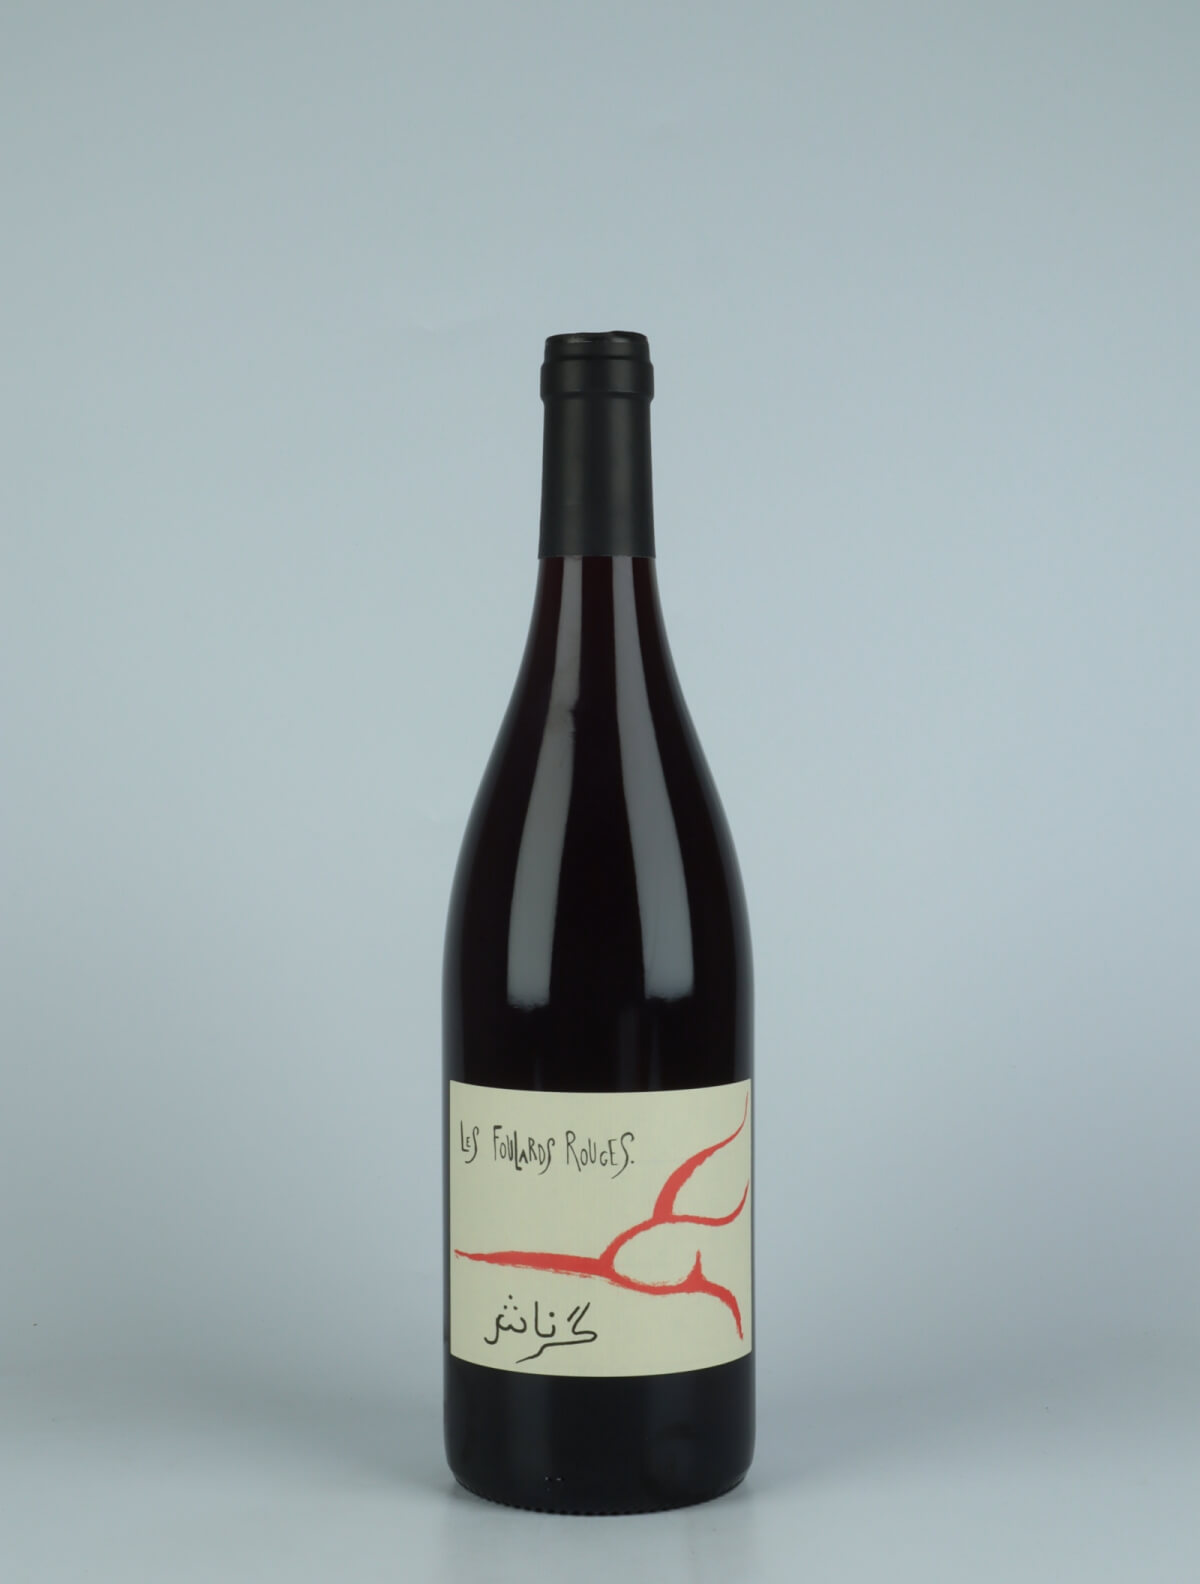 En flaske 2022 Grenache Rødvin fra Les Foulards Rouges, Languedoc i Frankrig